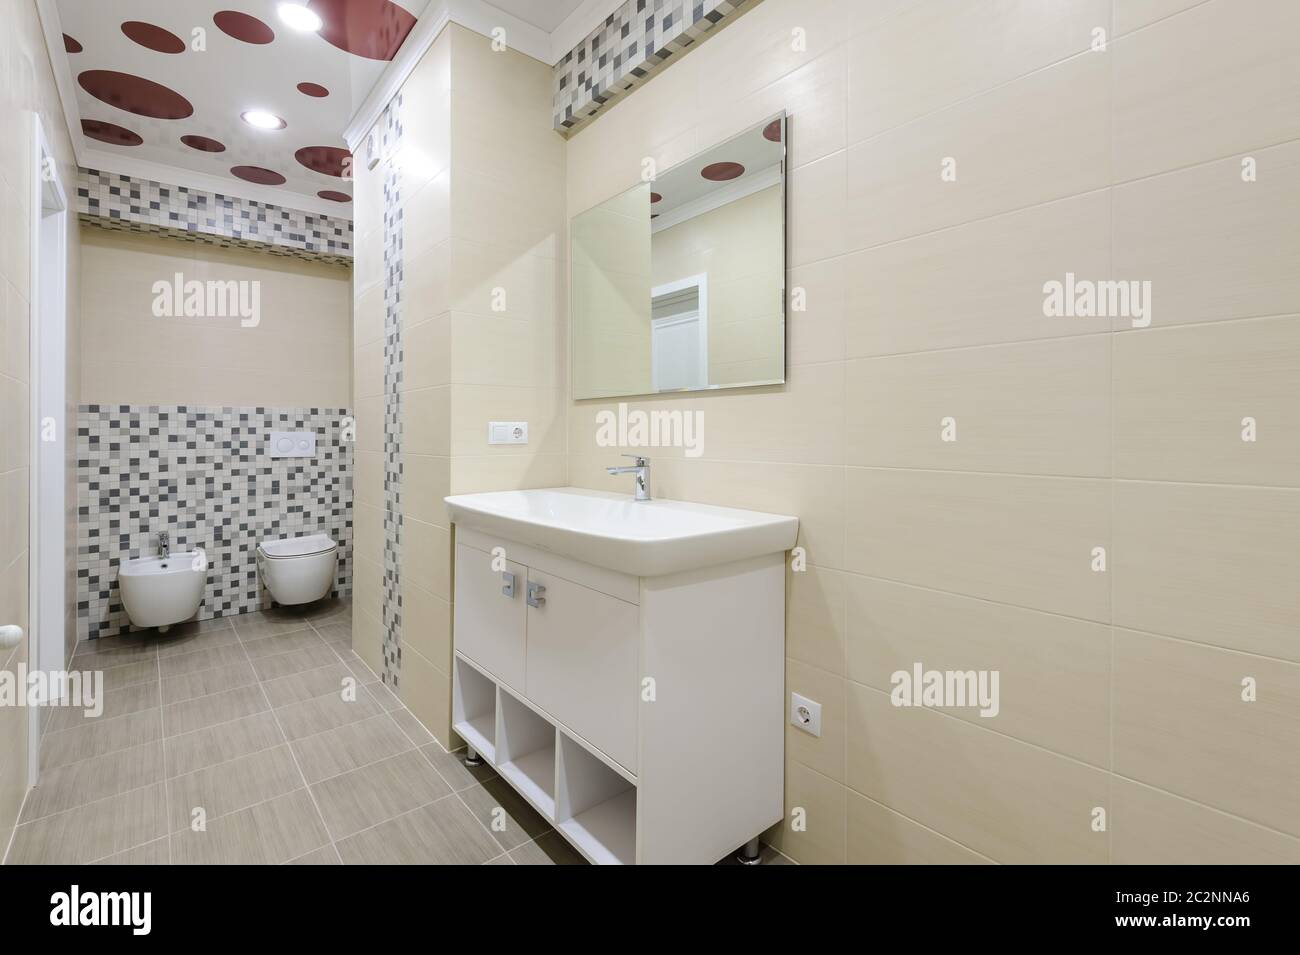 Salle de bains avec miroir intérieur, locker, wc et bidet Banque D'Images